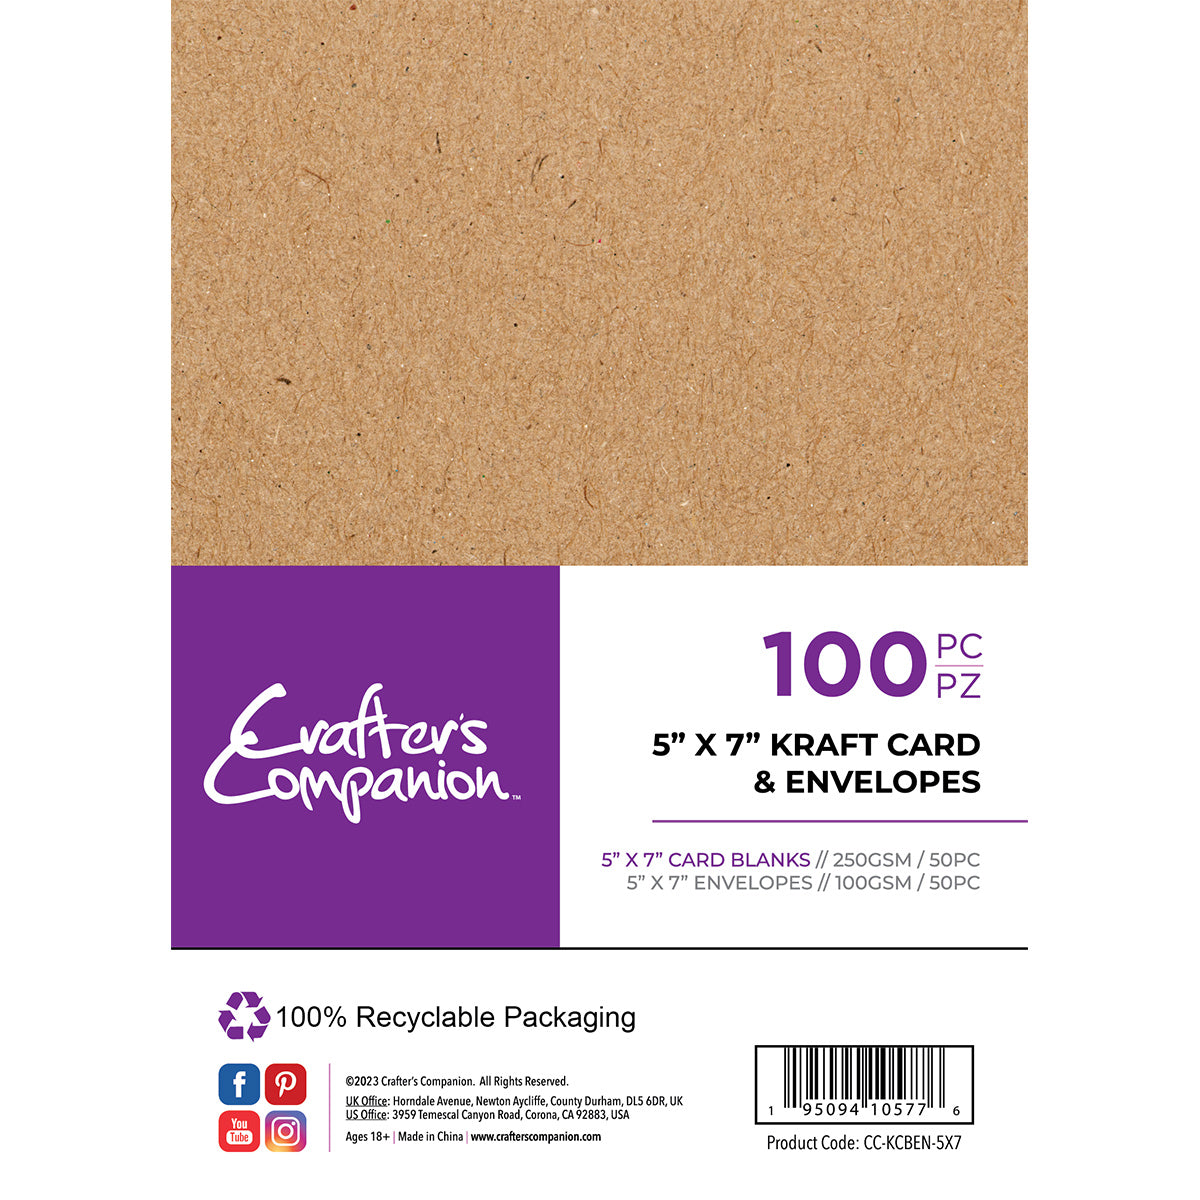 Crafter's Companion - 5 "x 7" kaarten en enveloppen 100 stuks - Kraft